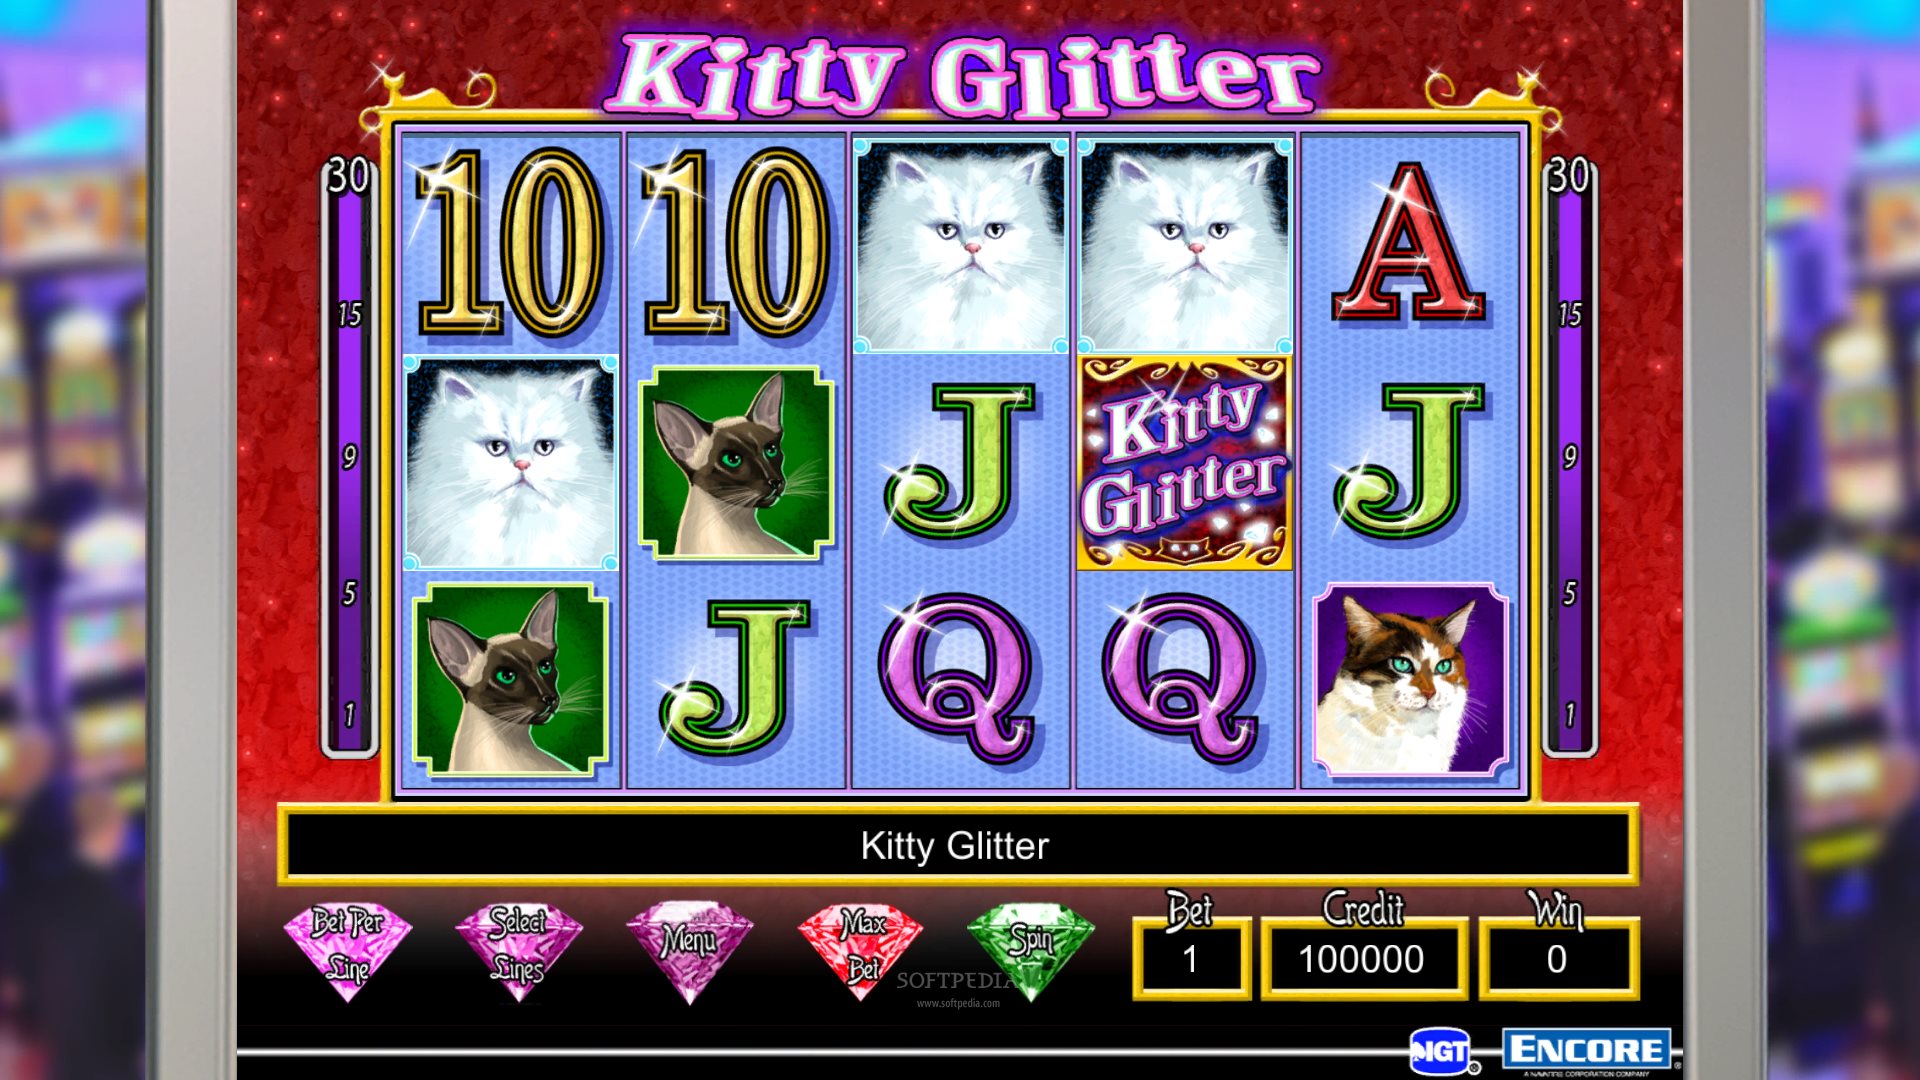 Kitty glitter band